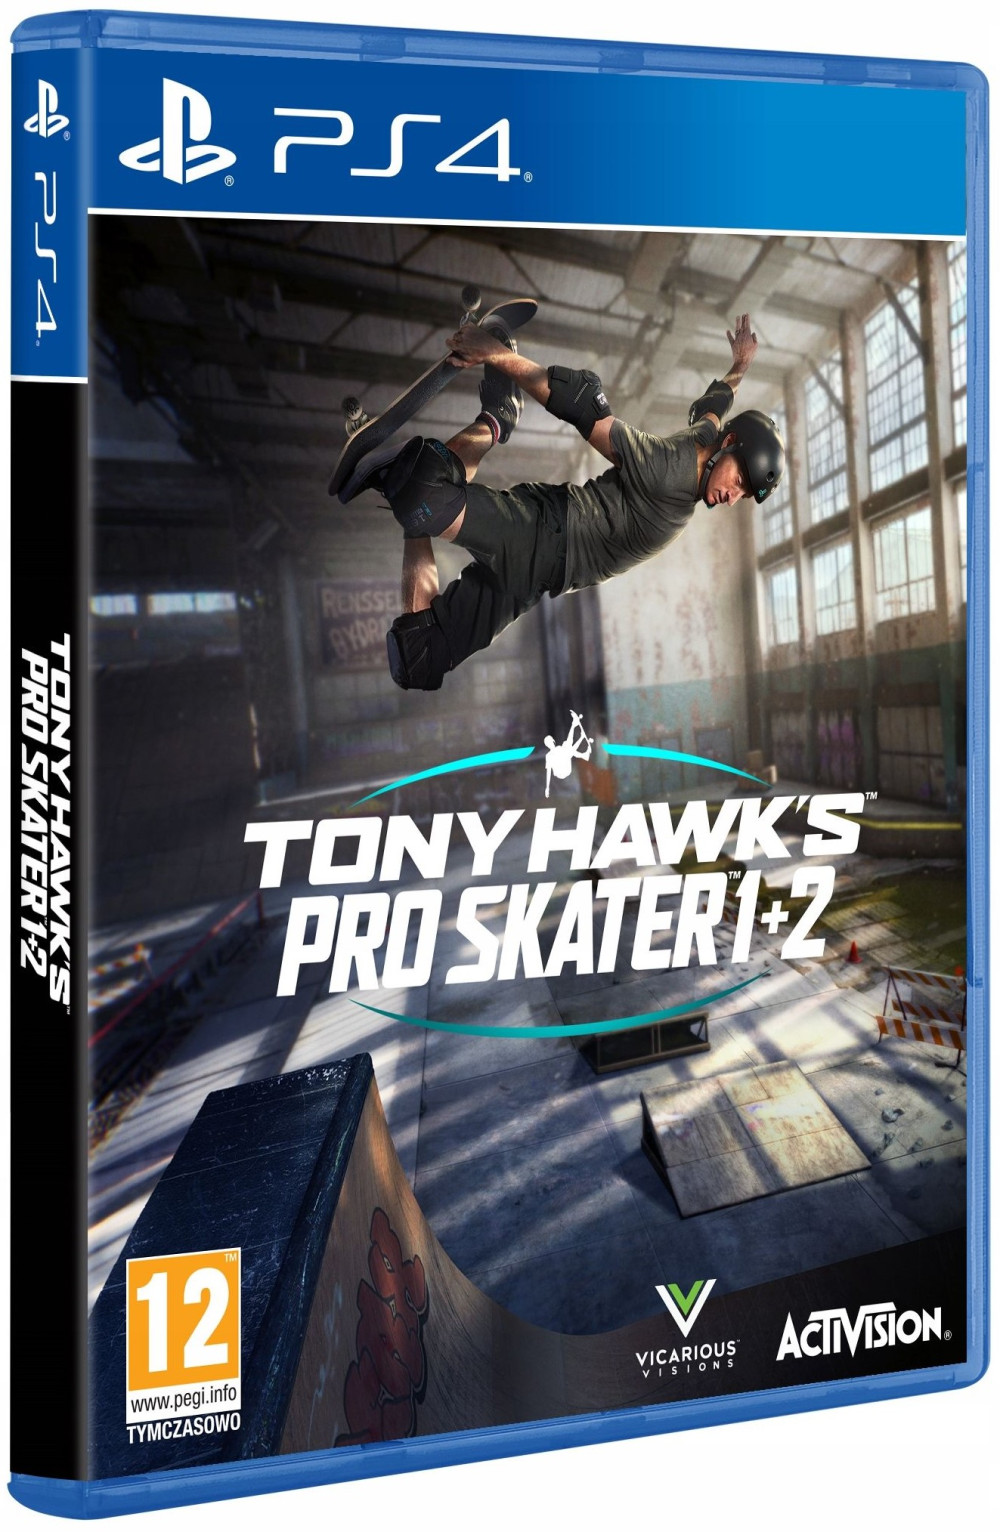  Tony Hawk's Pro Skater 1 + 2 [PS4,  ] +   - 9  2   